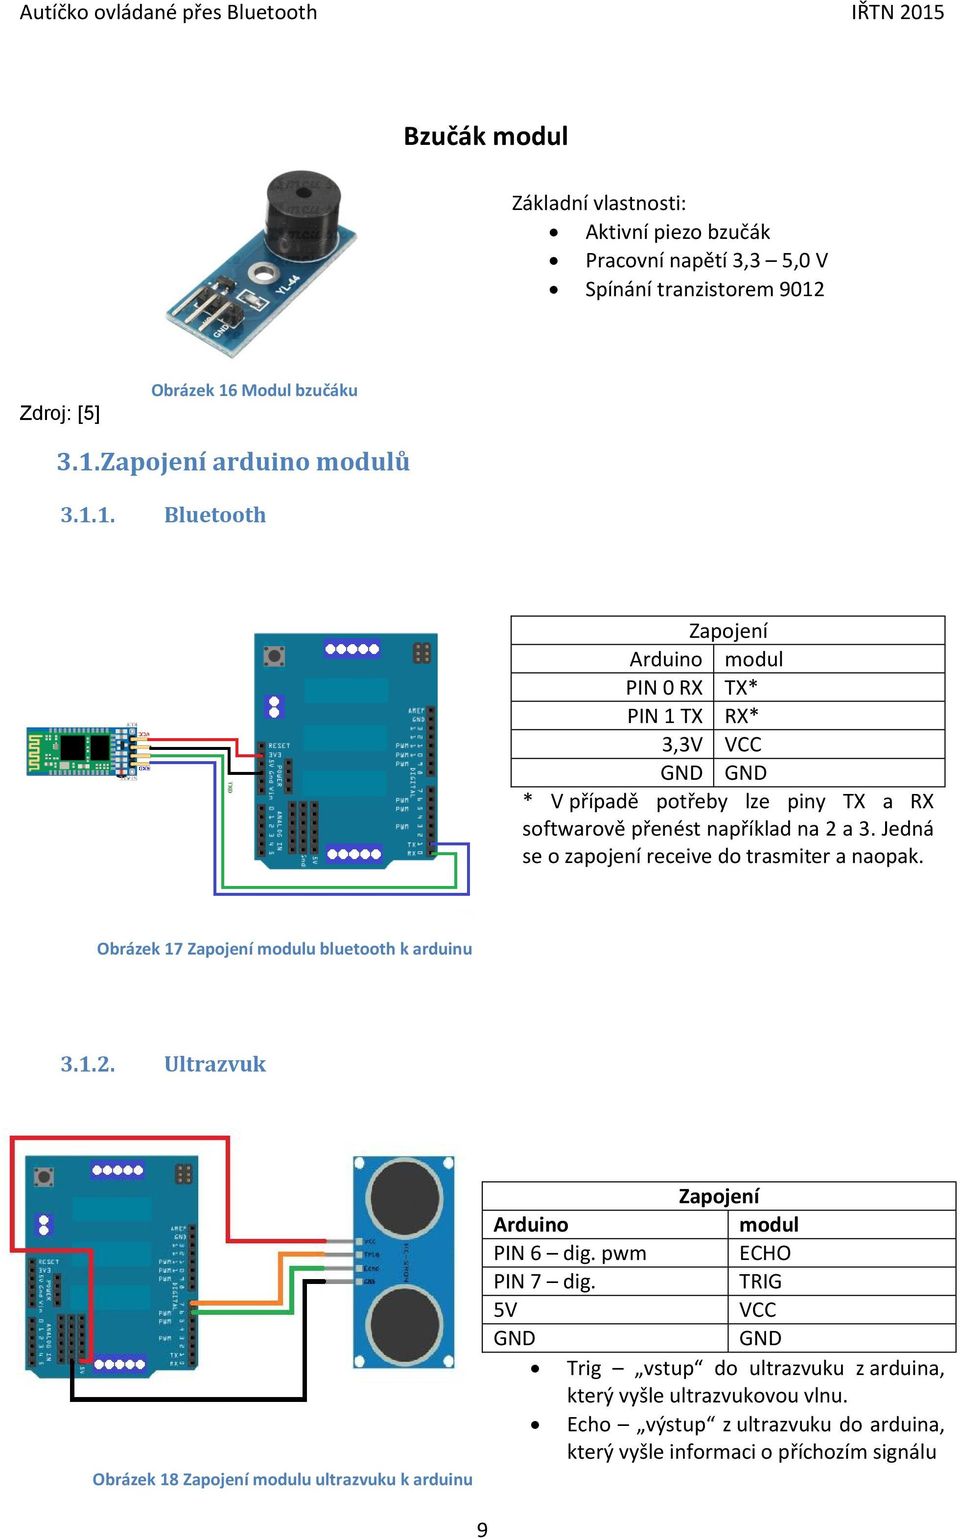 Autíčko ovládané přes Bluetooth - PDF Stažení zdarma